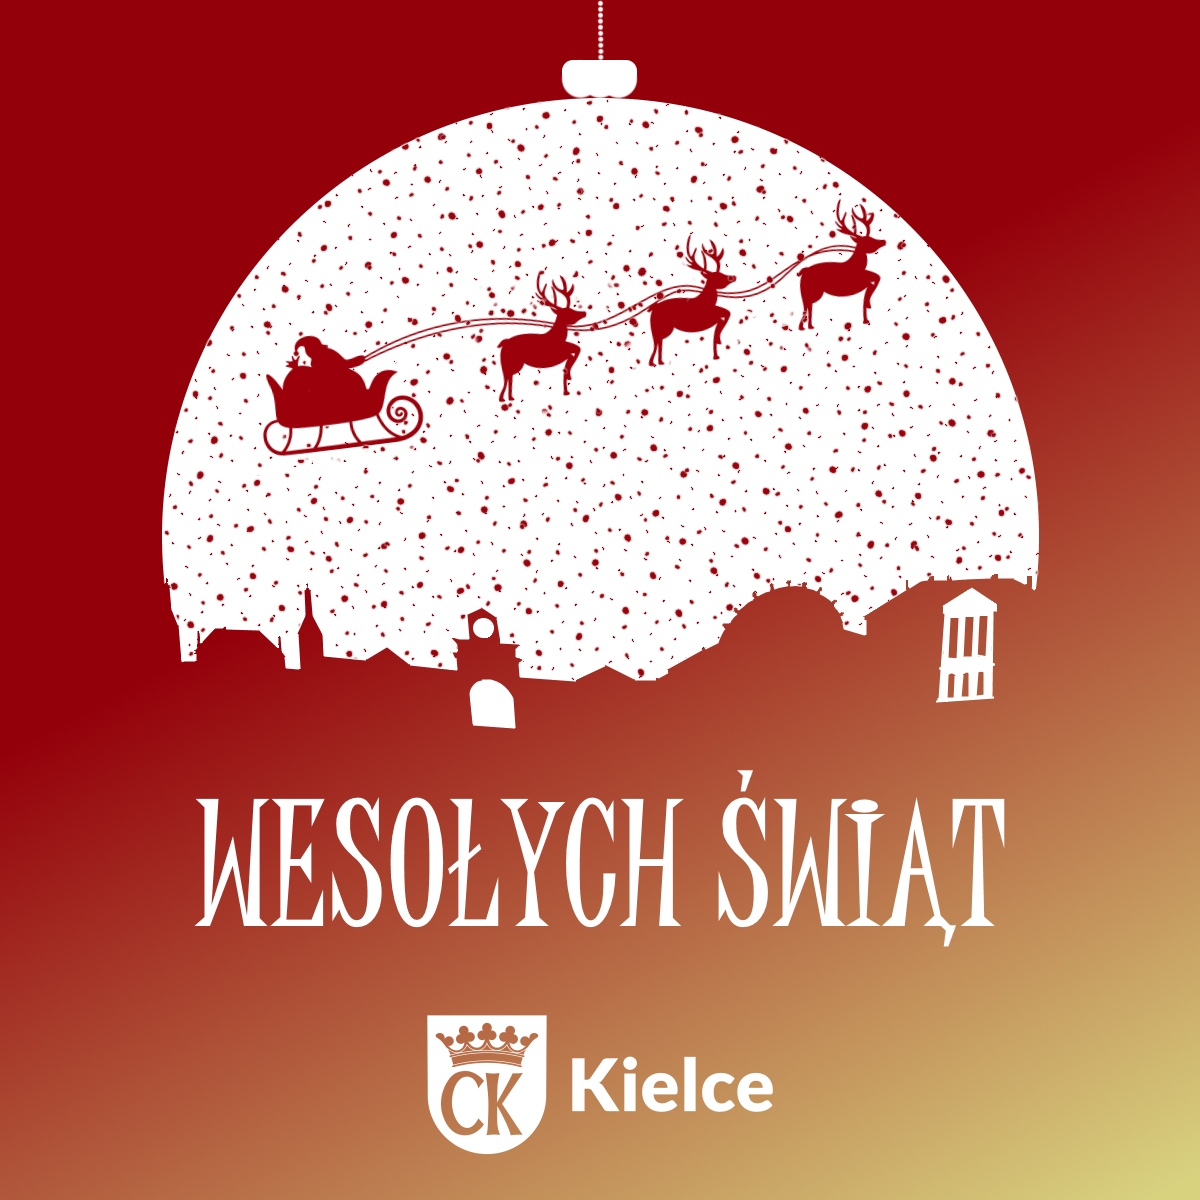 Grafika; bombka z saniami św. Mikołaja, poniżej elementy charakterystyczne dla Kielc - Urząd Miasta, Pałac Biskupów, Dworzec autobusowy i napis Wesołych Świąt